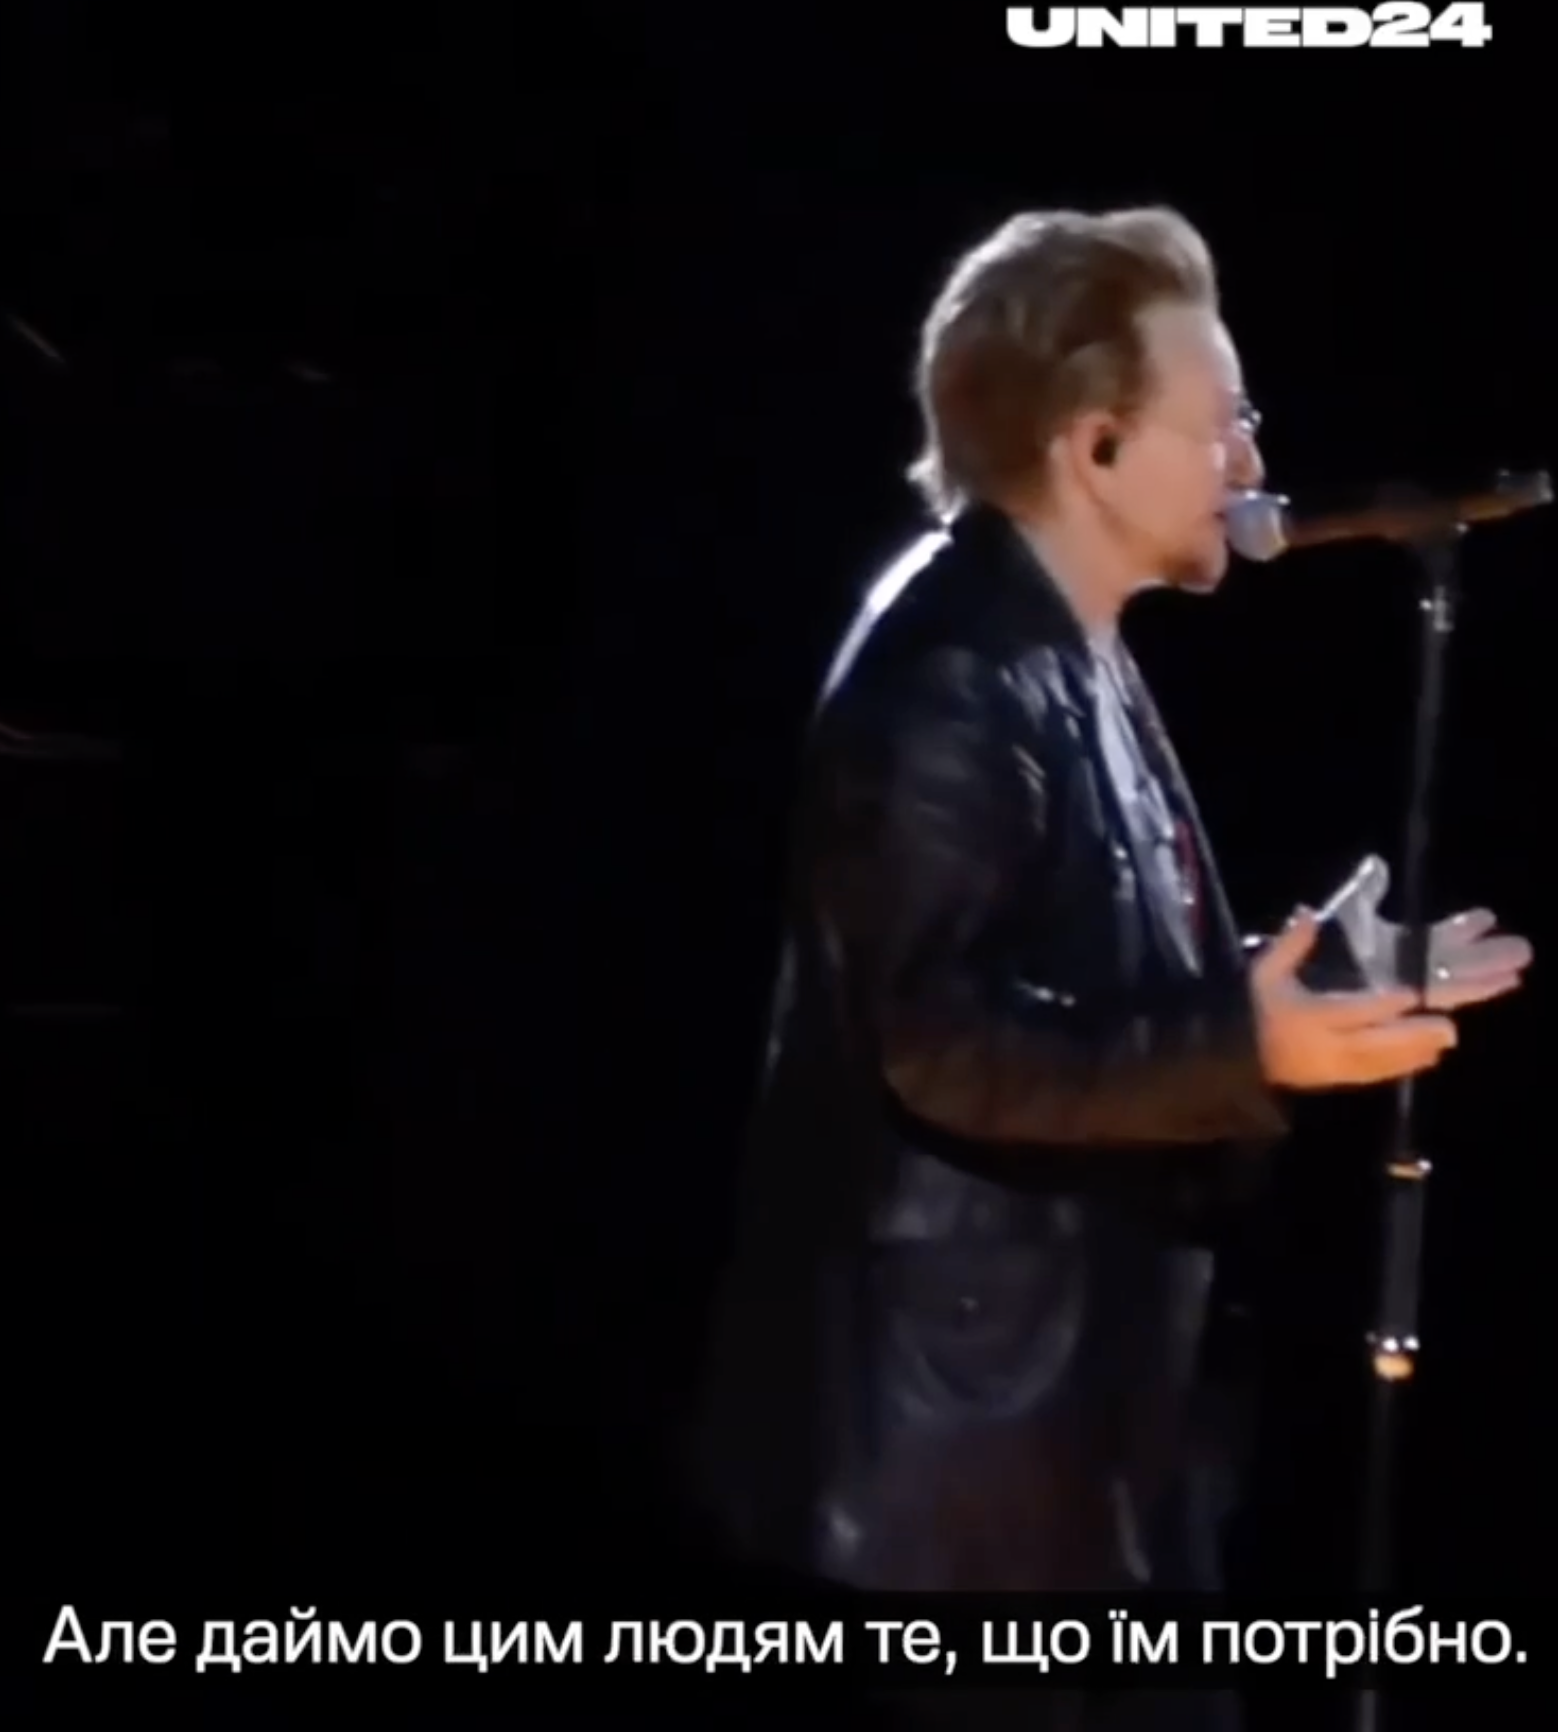 "Вони борються за нашу свободу": лідер культового гурту U2 Боно на концерті в Лас-Вегасі закликав США допомагати Україні. Відео